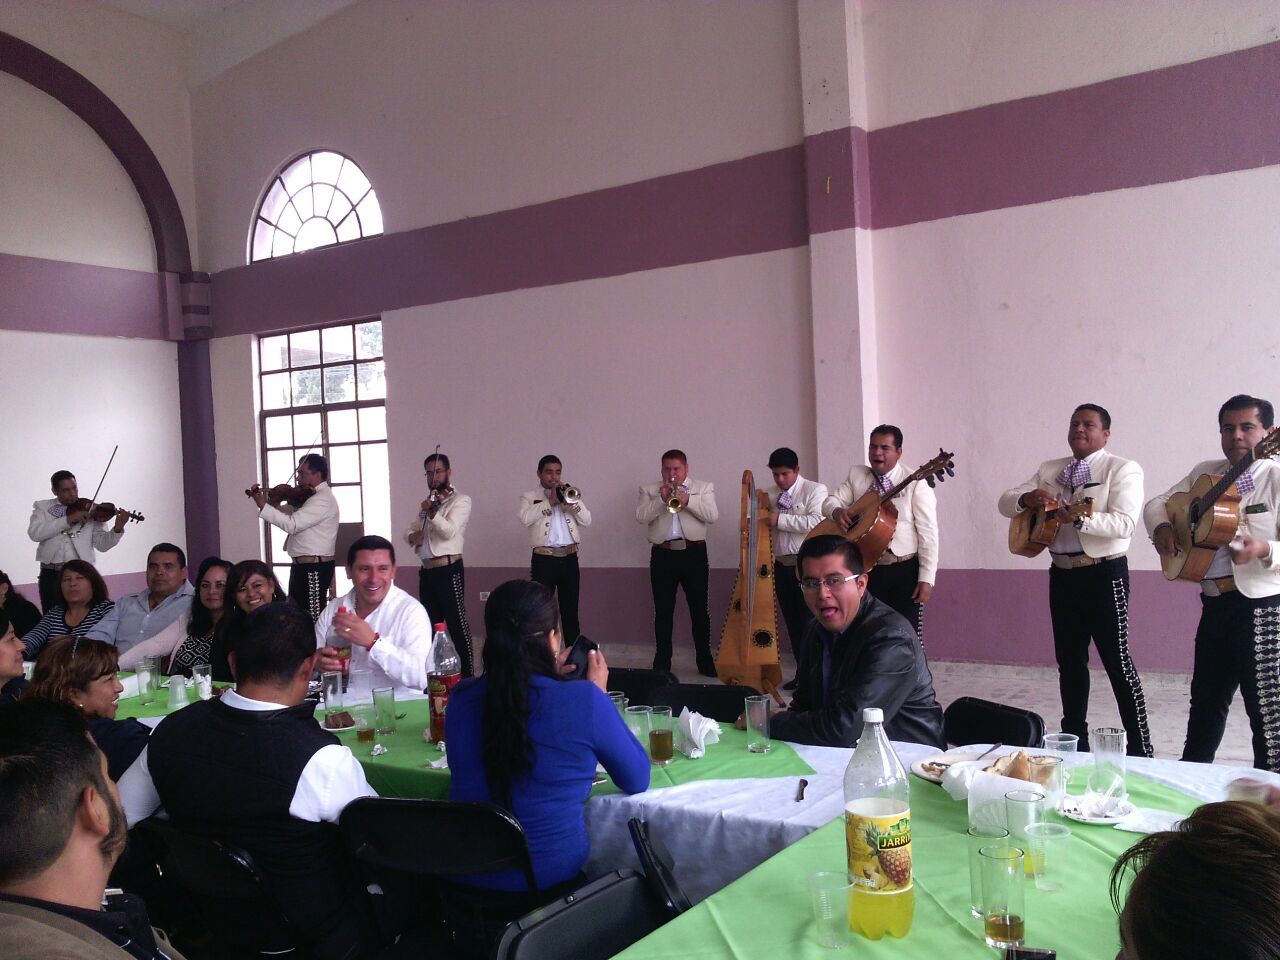 Alcalde de Chiautla festeja cumpleaños con mariachi y comida.. pero en horas de trabajo 